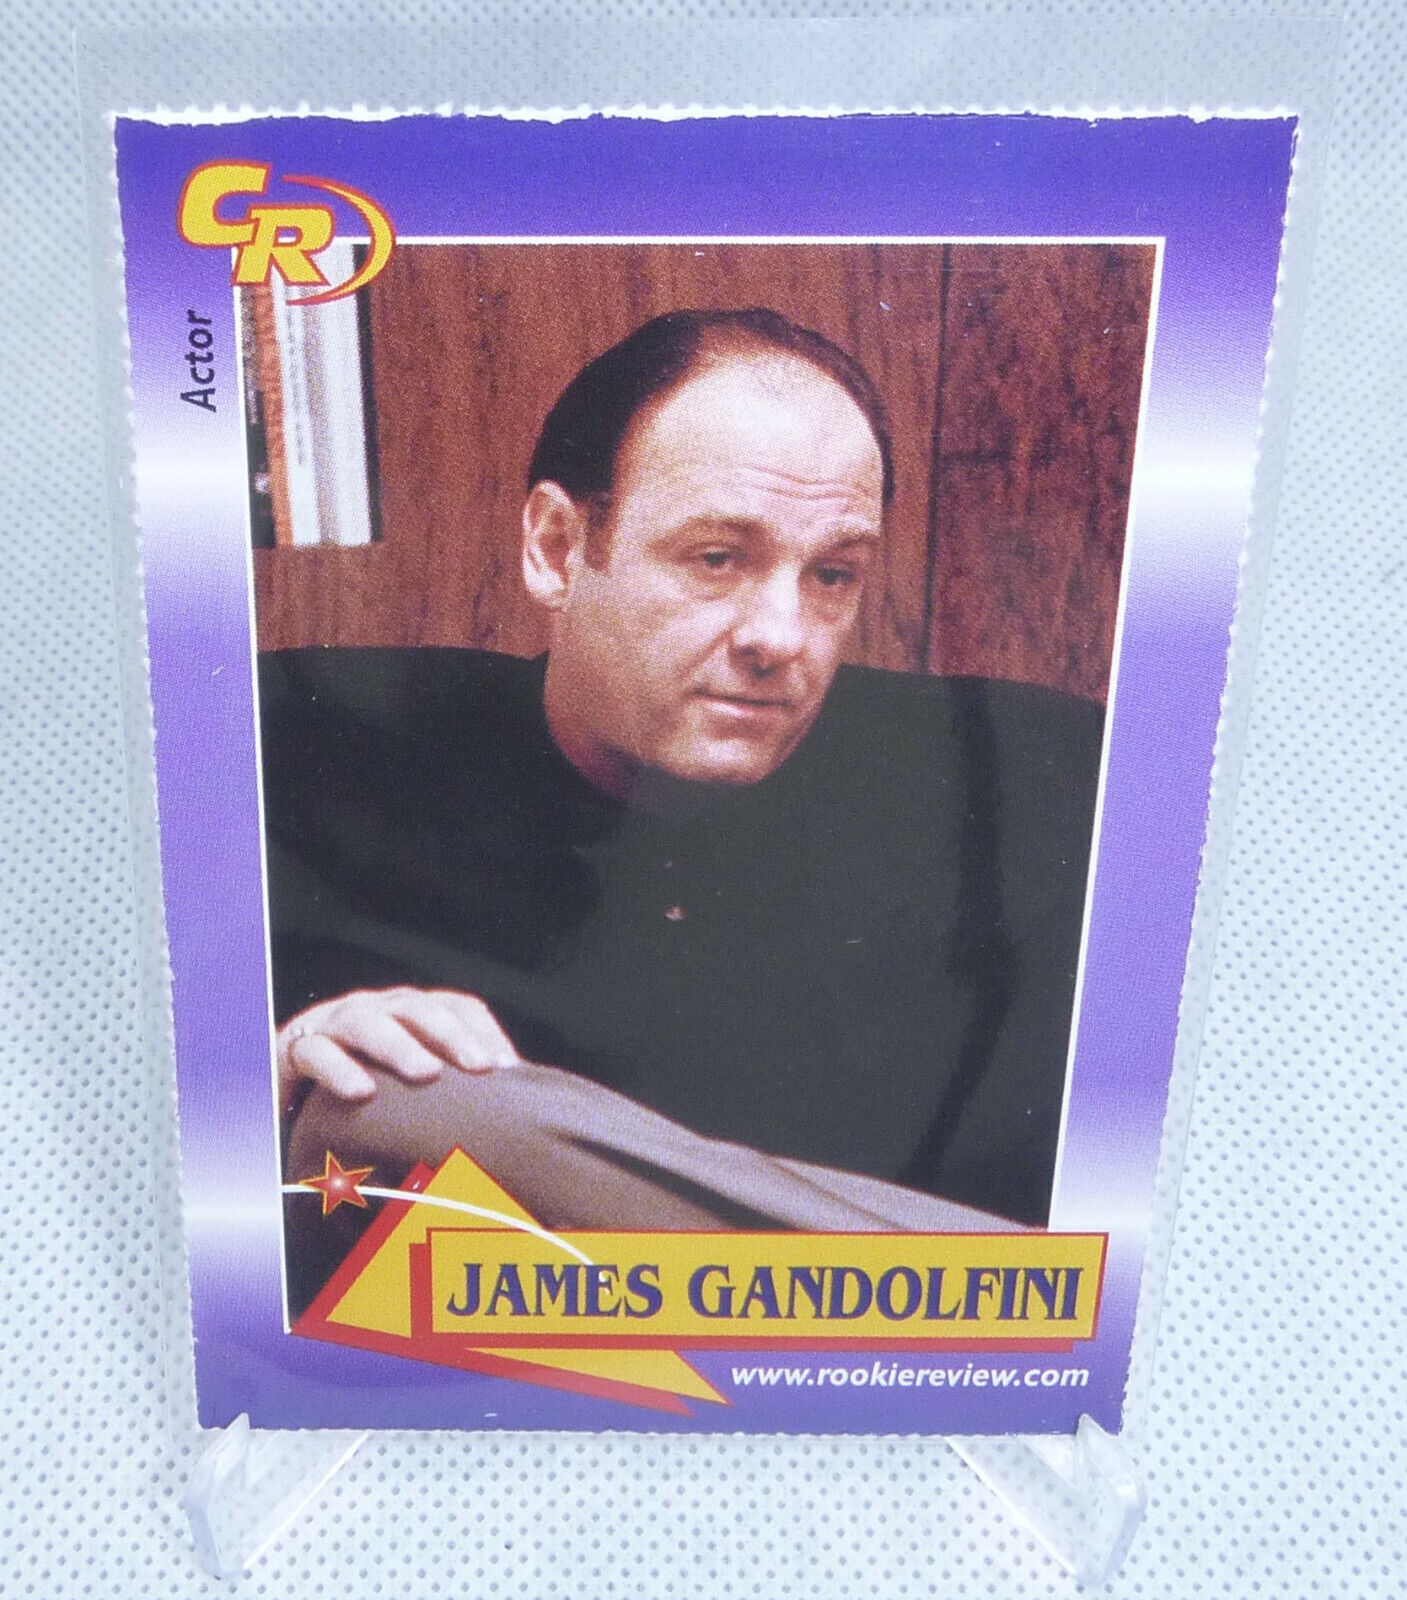 2003 Celebrity Review Rookie Review The Sapranos James Gandolfini Actor Card #15